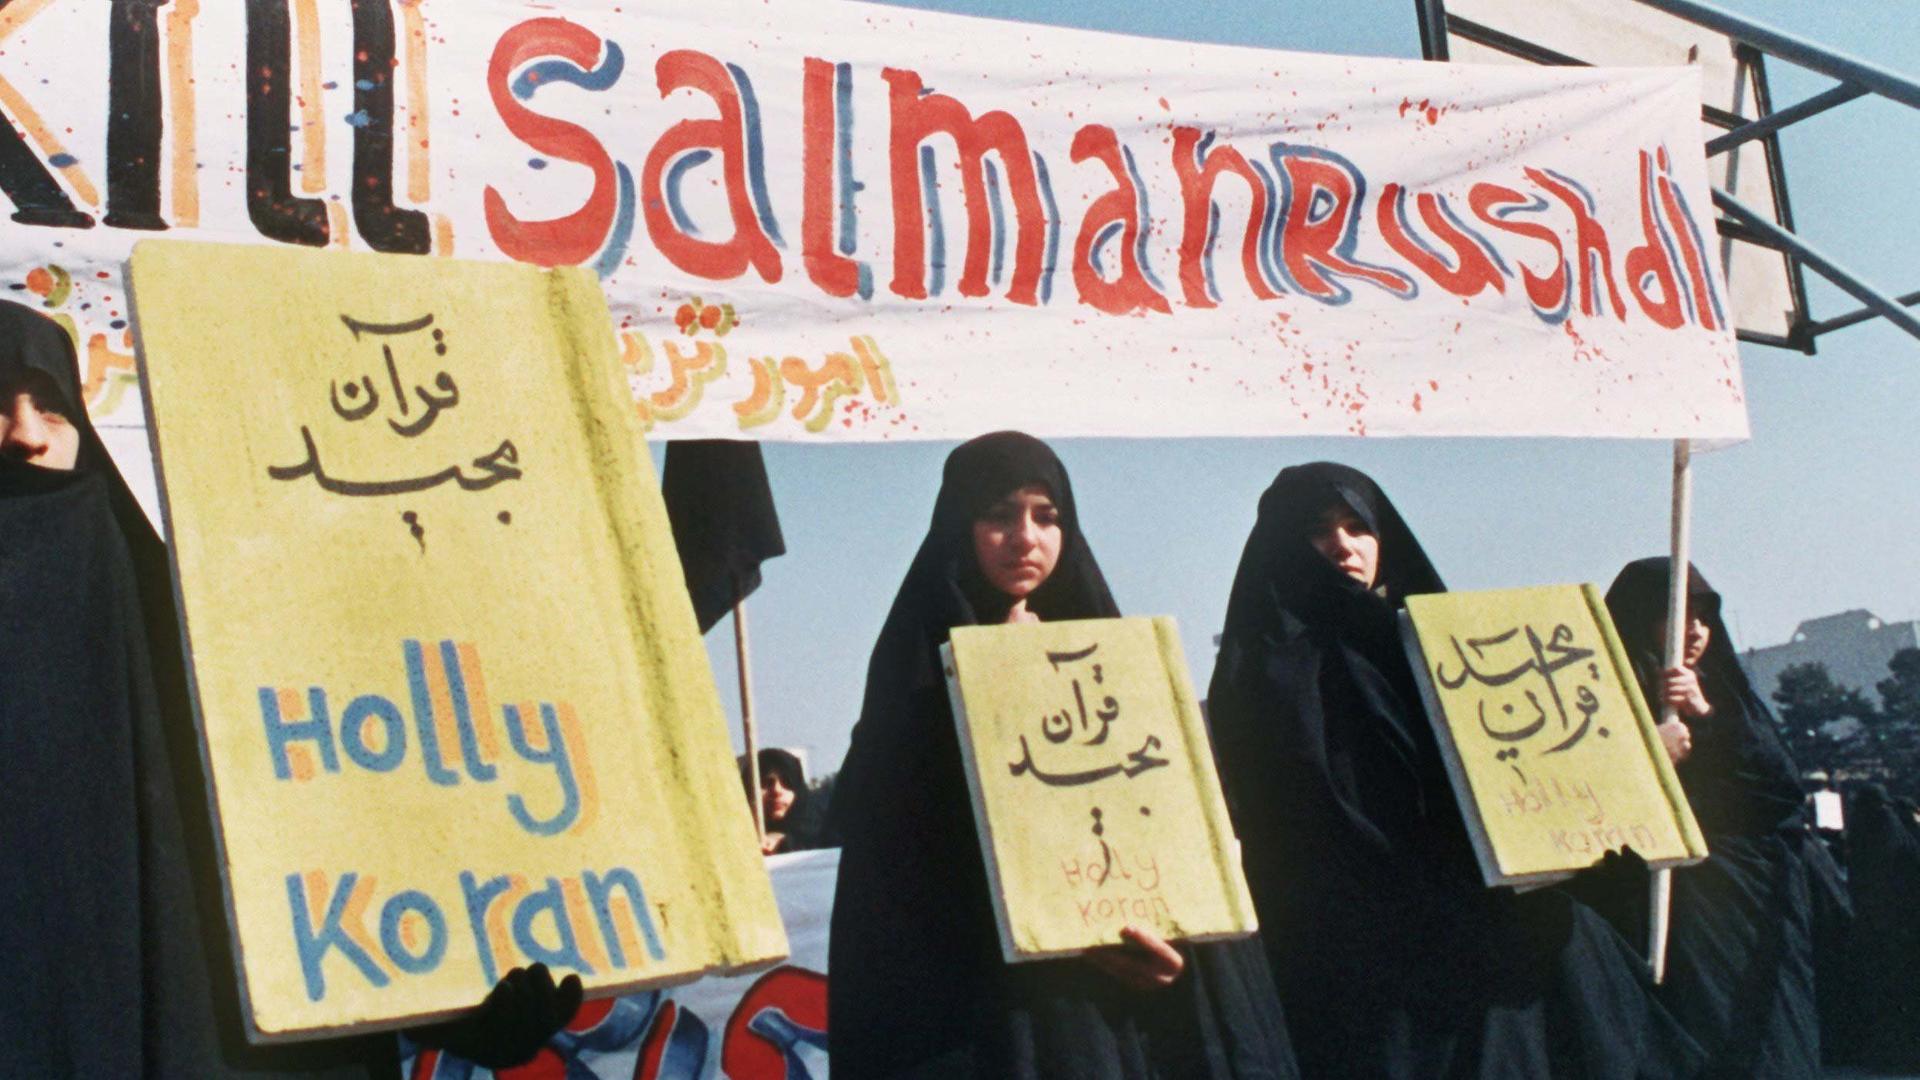 Kill Salman Rushdie" ist auf einem Spruchband zu lesen, das iranische Frauen (Archivbild vom 17.2.1989) in Teheran bei einer Demonstration gegen den britischen Schriftsteller Salman Rushdie und sein Buch "Satanische Verse" mit sich führen 